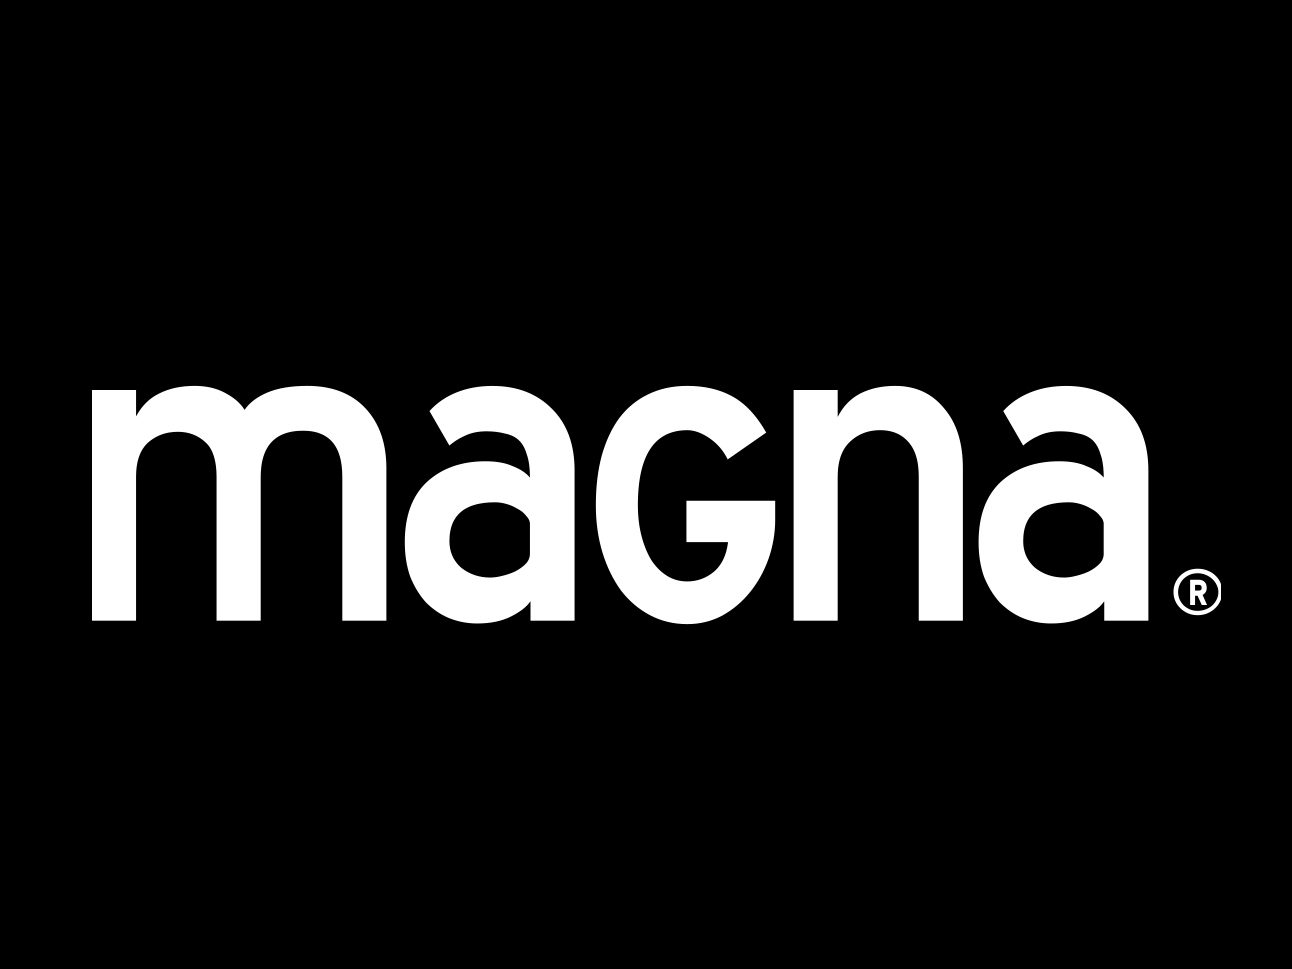 Magna Motors